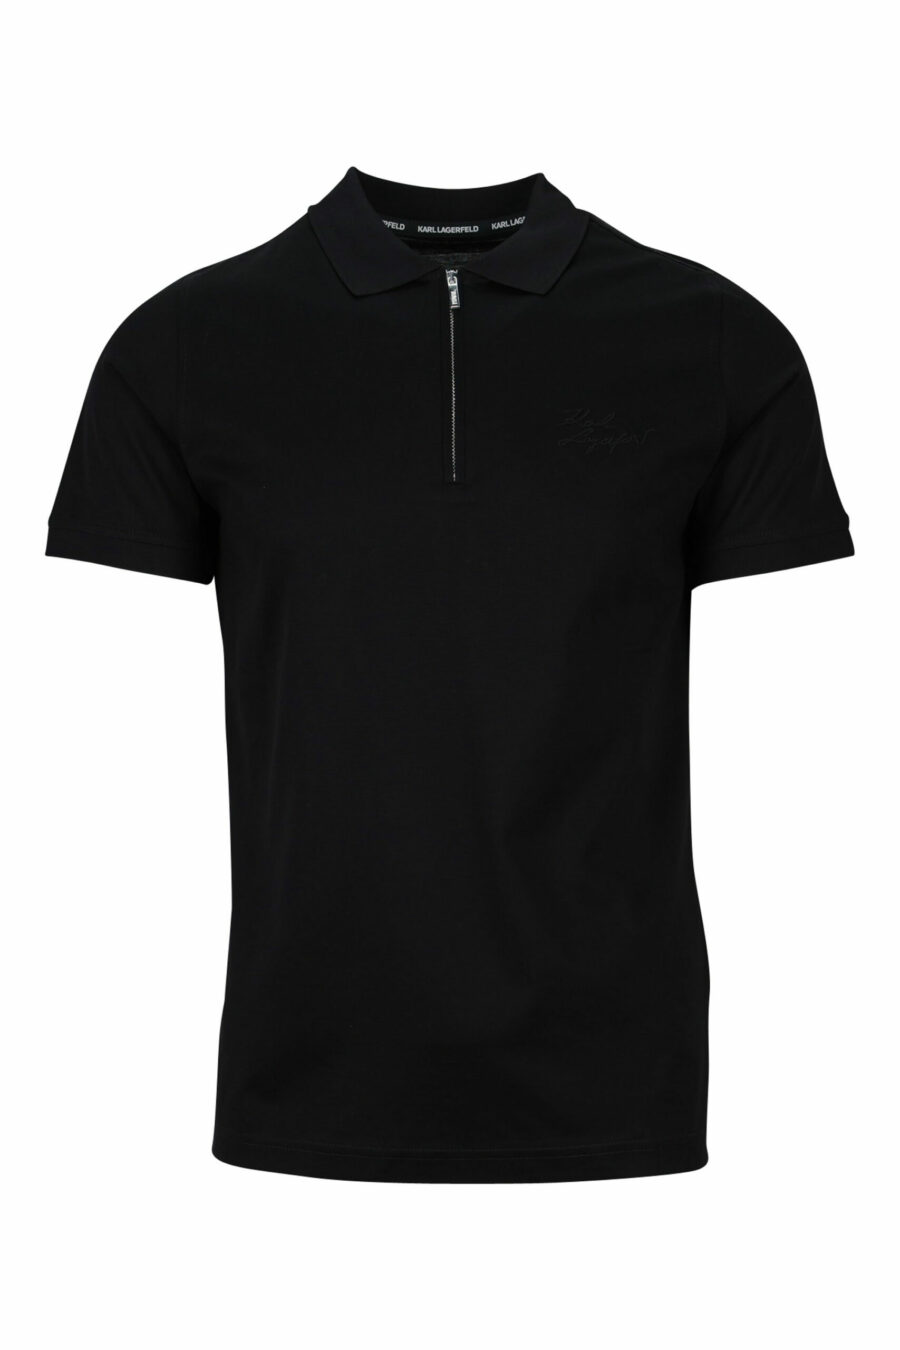 Schwarzes Reißverschluss-Poloshirt mit schwarzem Minilogue - 4062226397179 skaliert